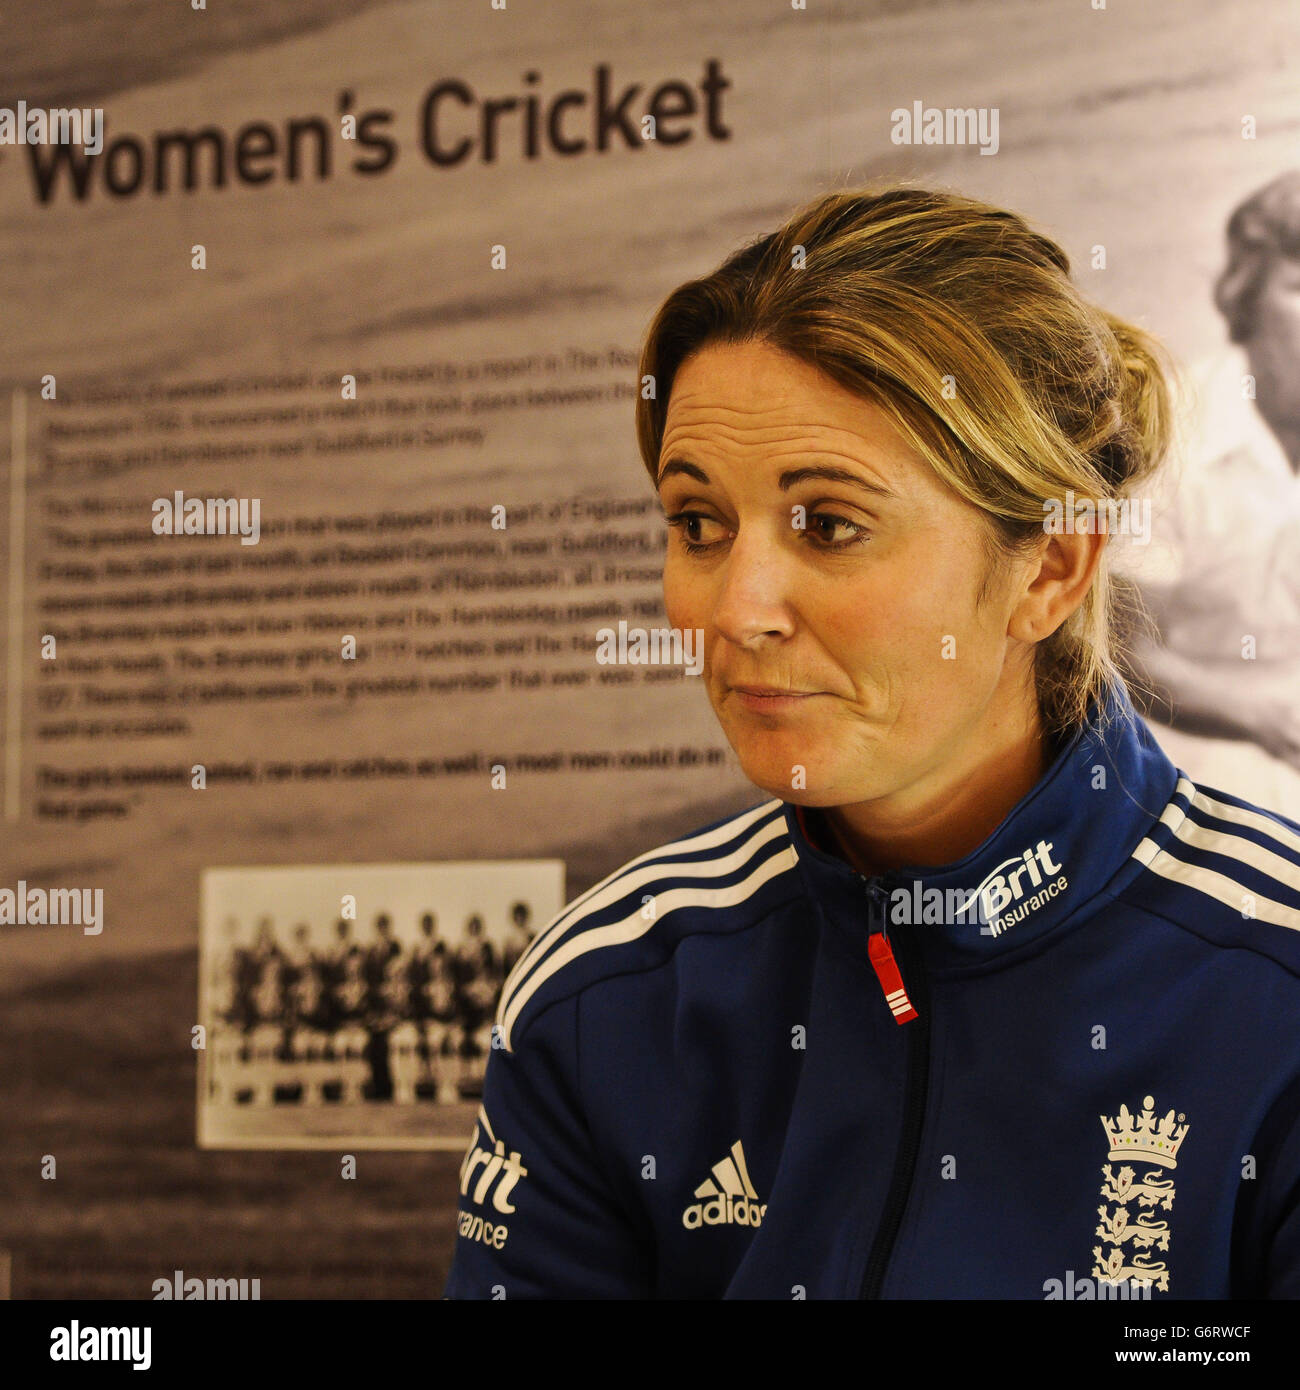 England Frauen-Team-Kapitän Charlotte Edwards während einer Fotozelle auf dem County Ground, Taunton, Somerset. Stockfoto